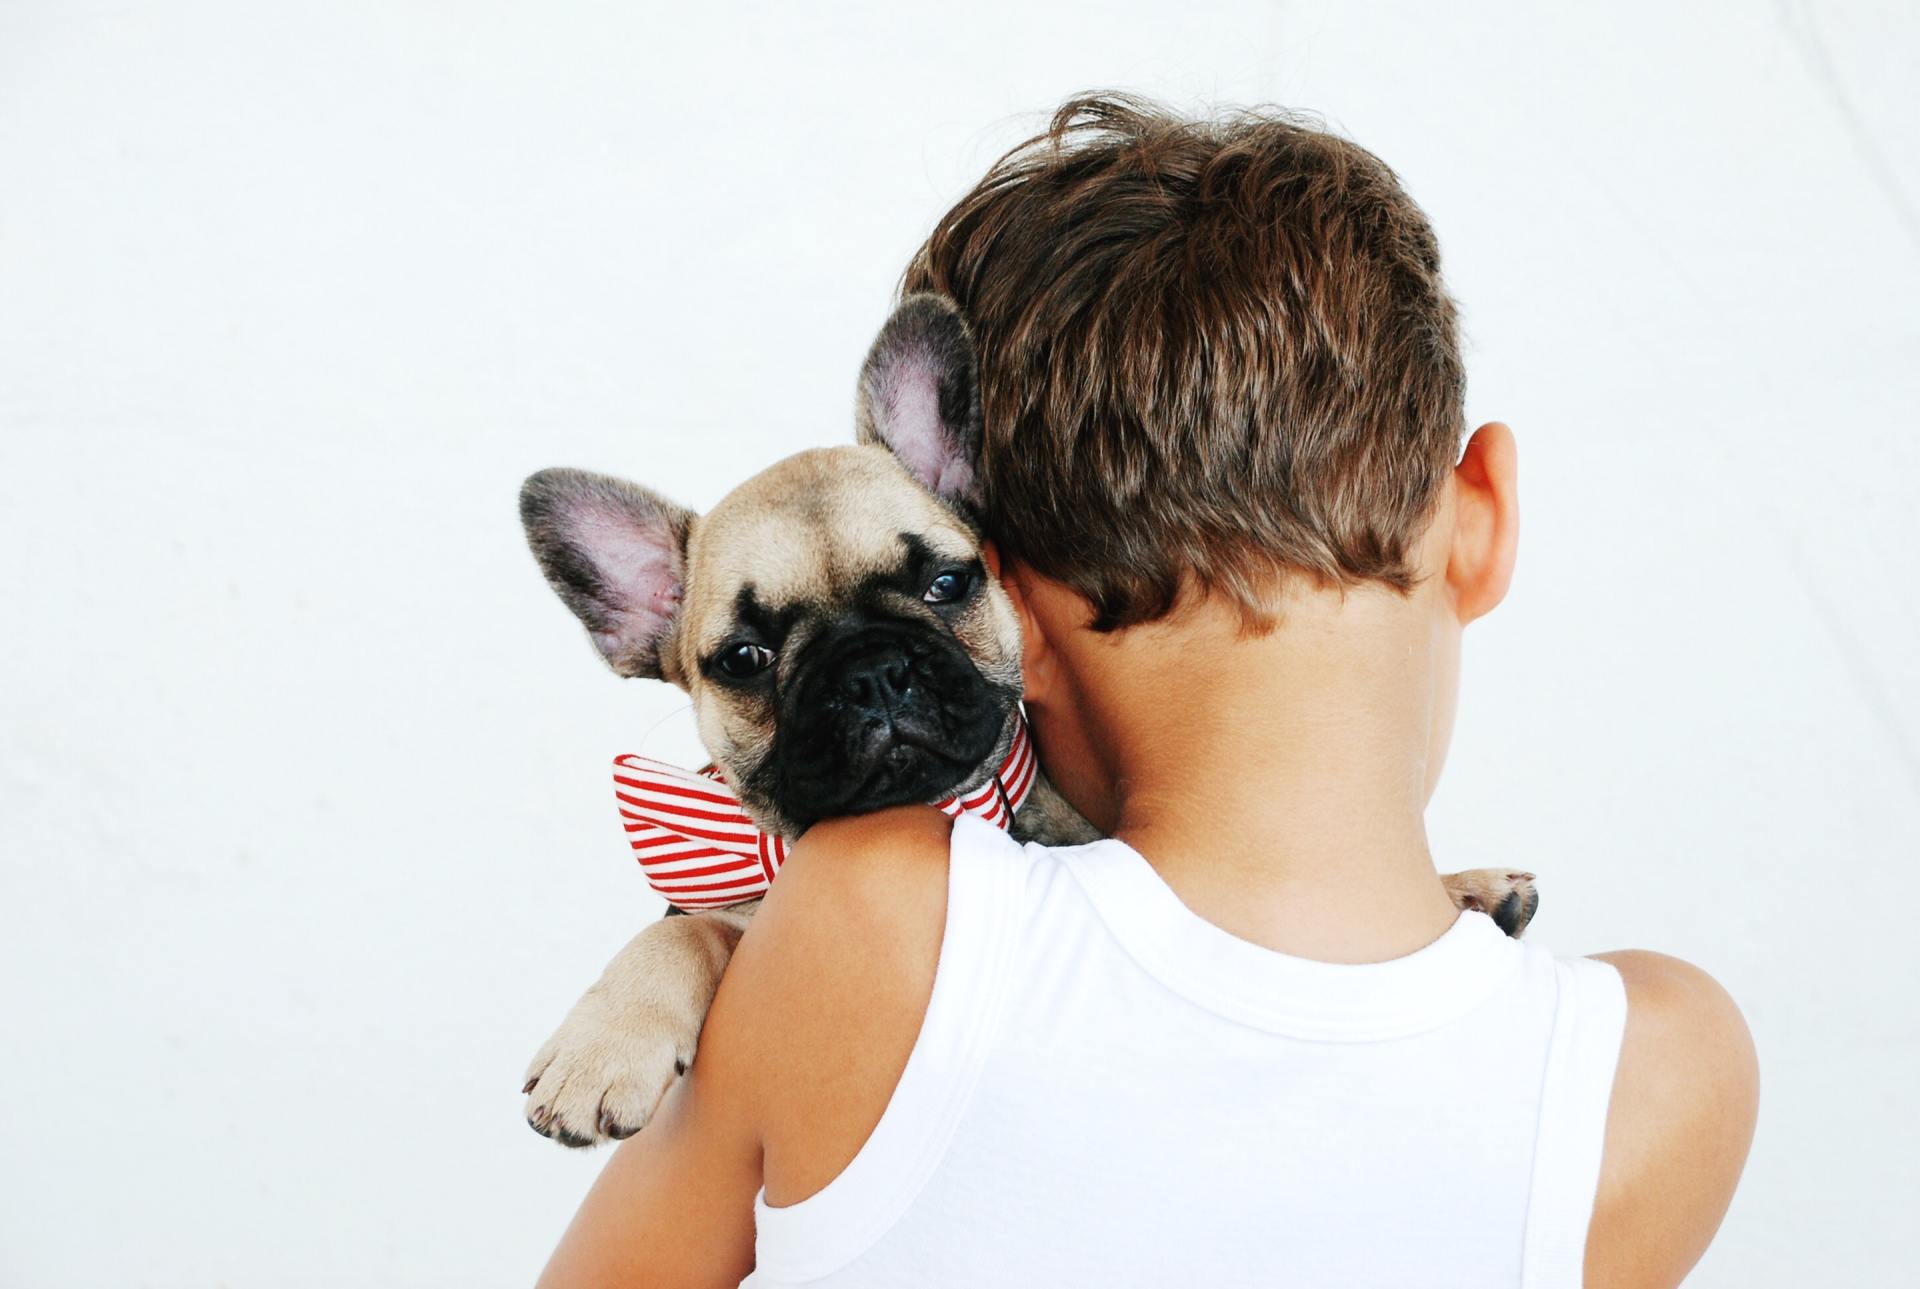 boy holding a dog